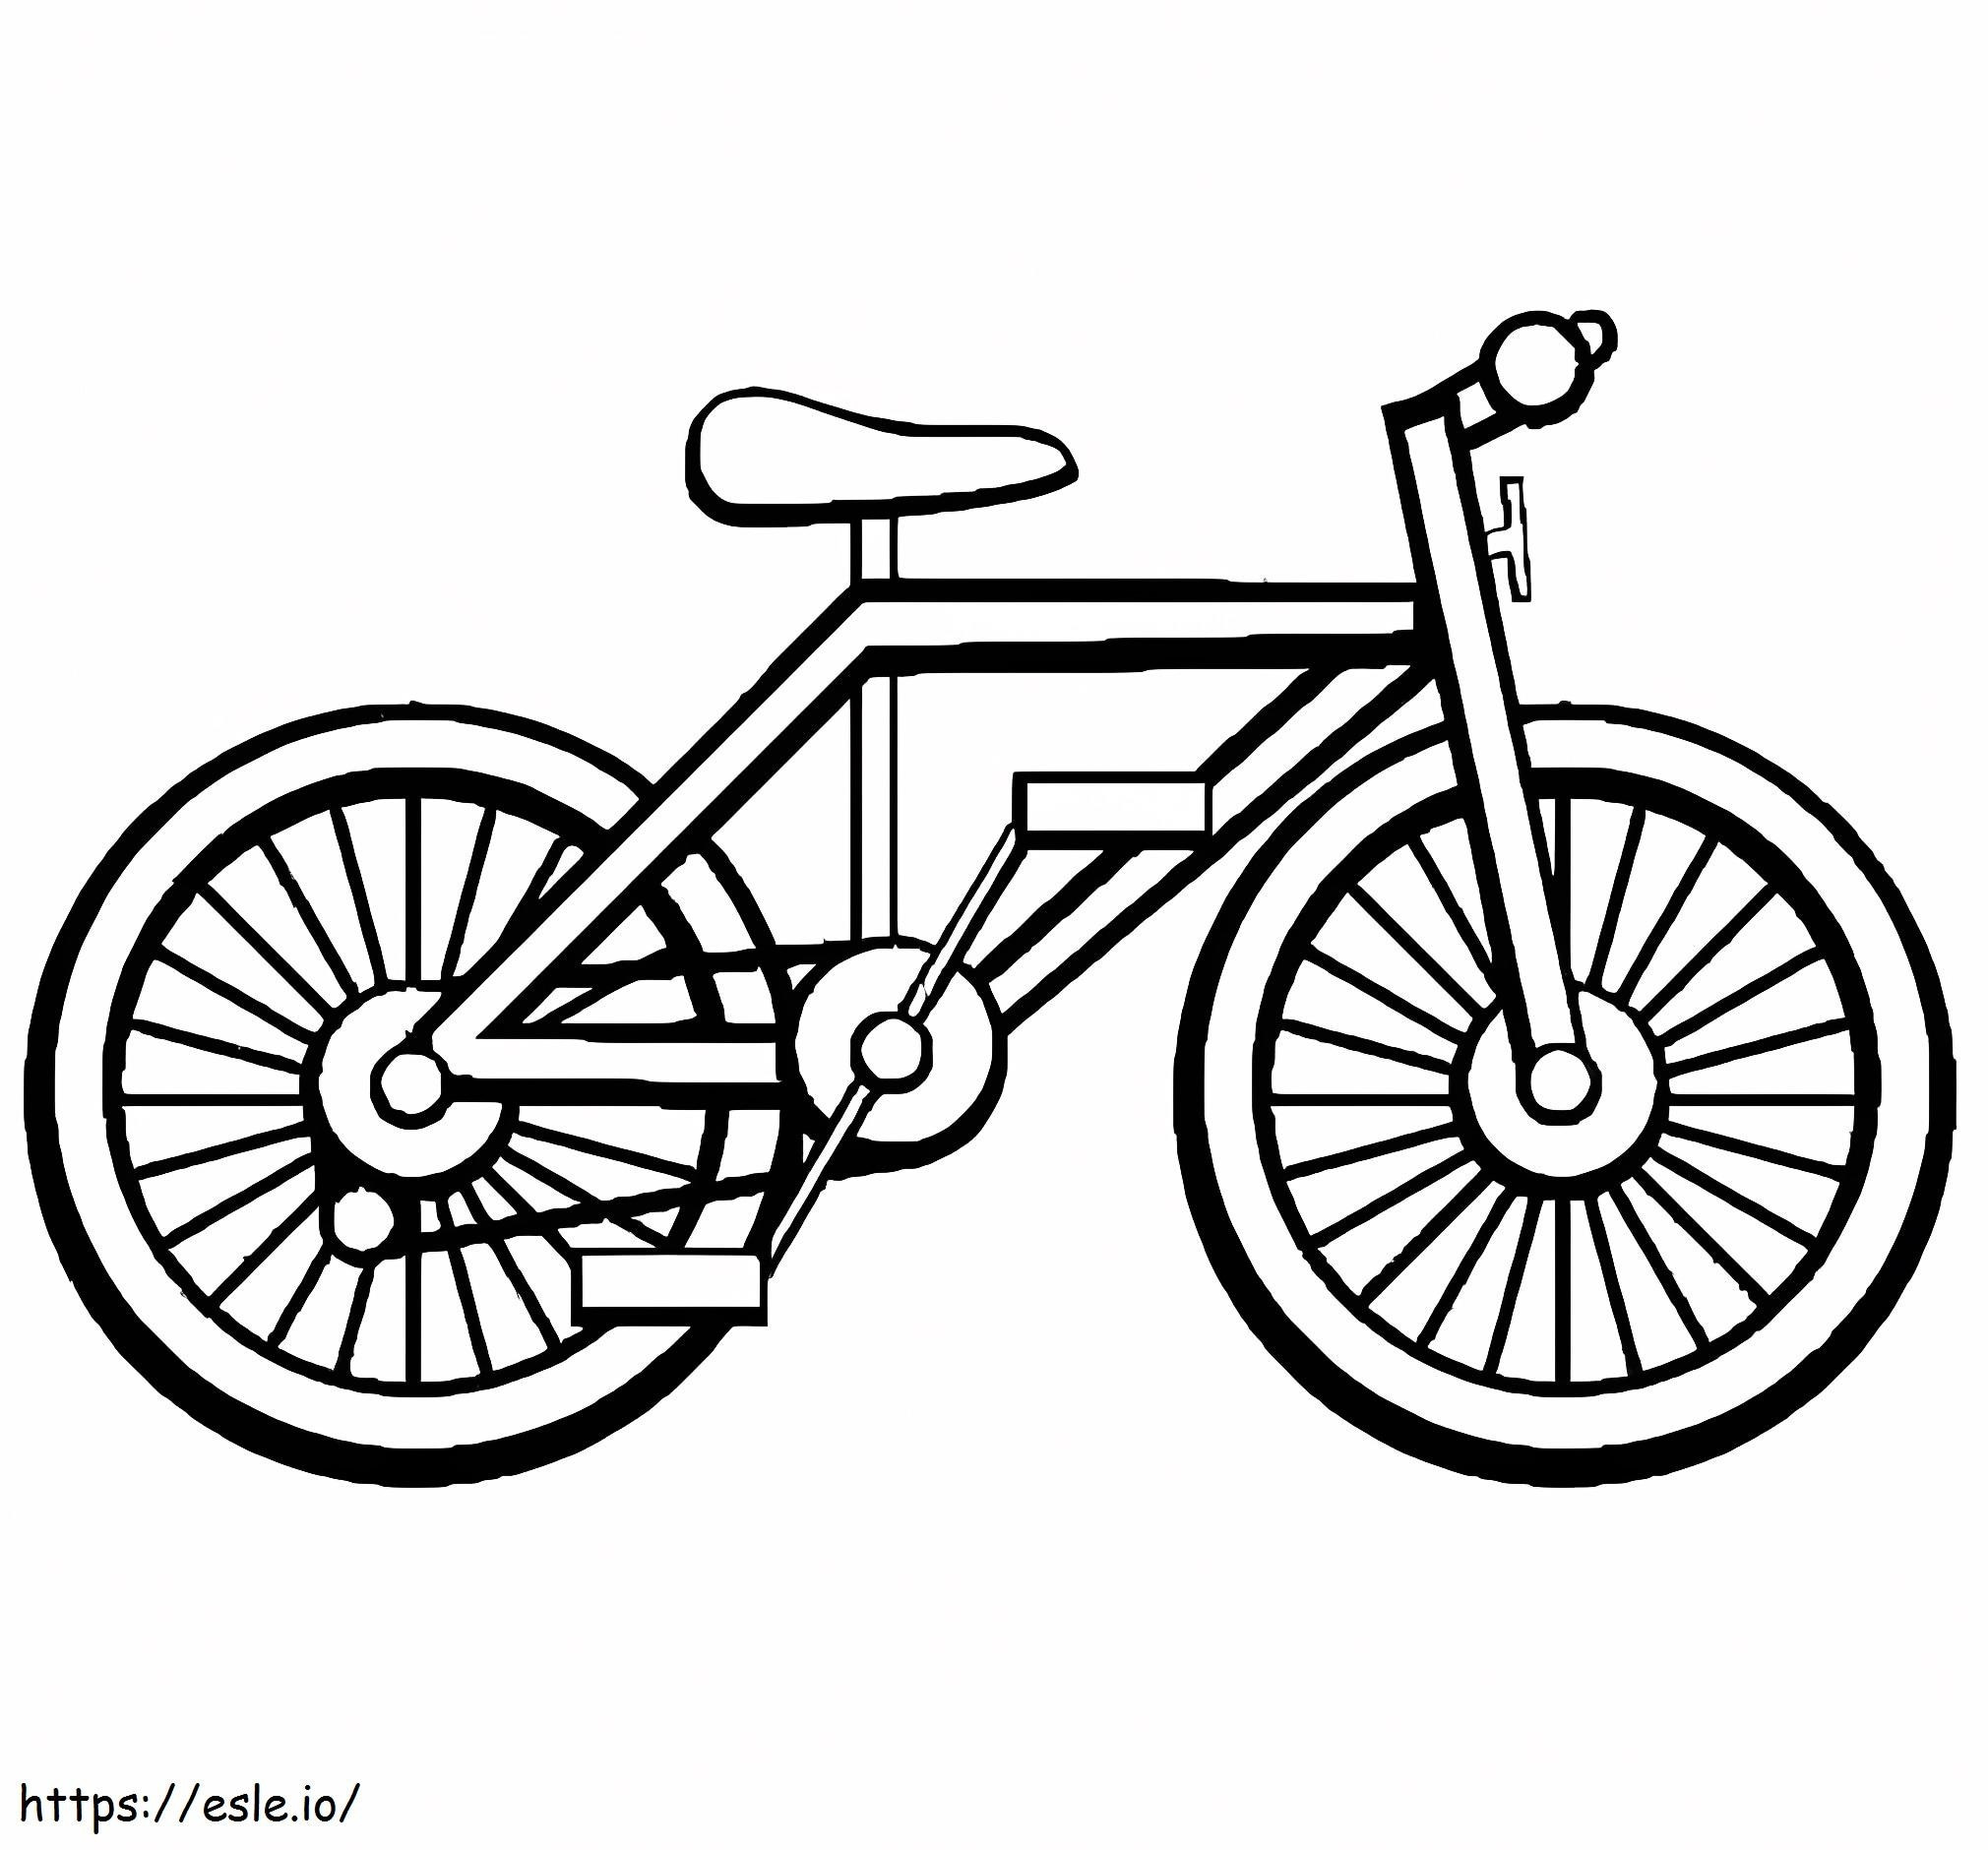 Ein Fahrrad ausmalbilder